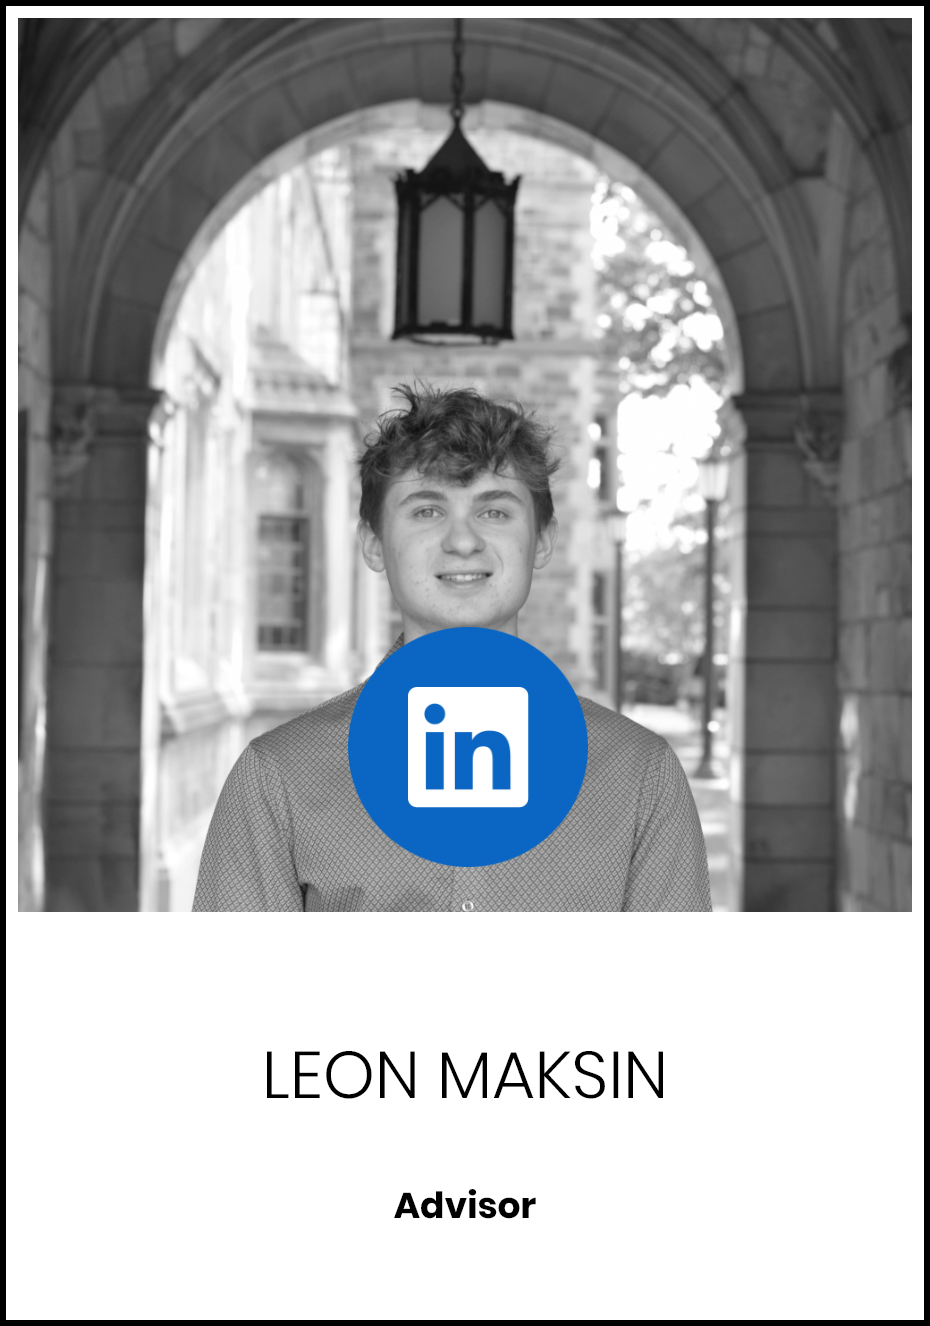 Leon Maksin